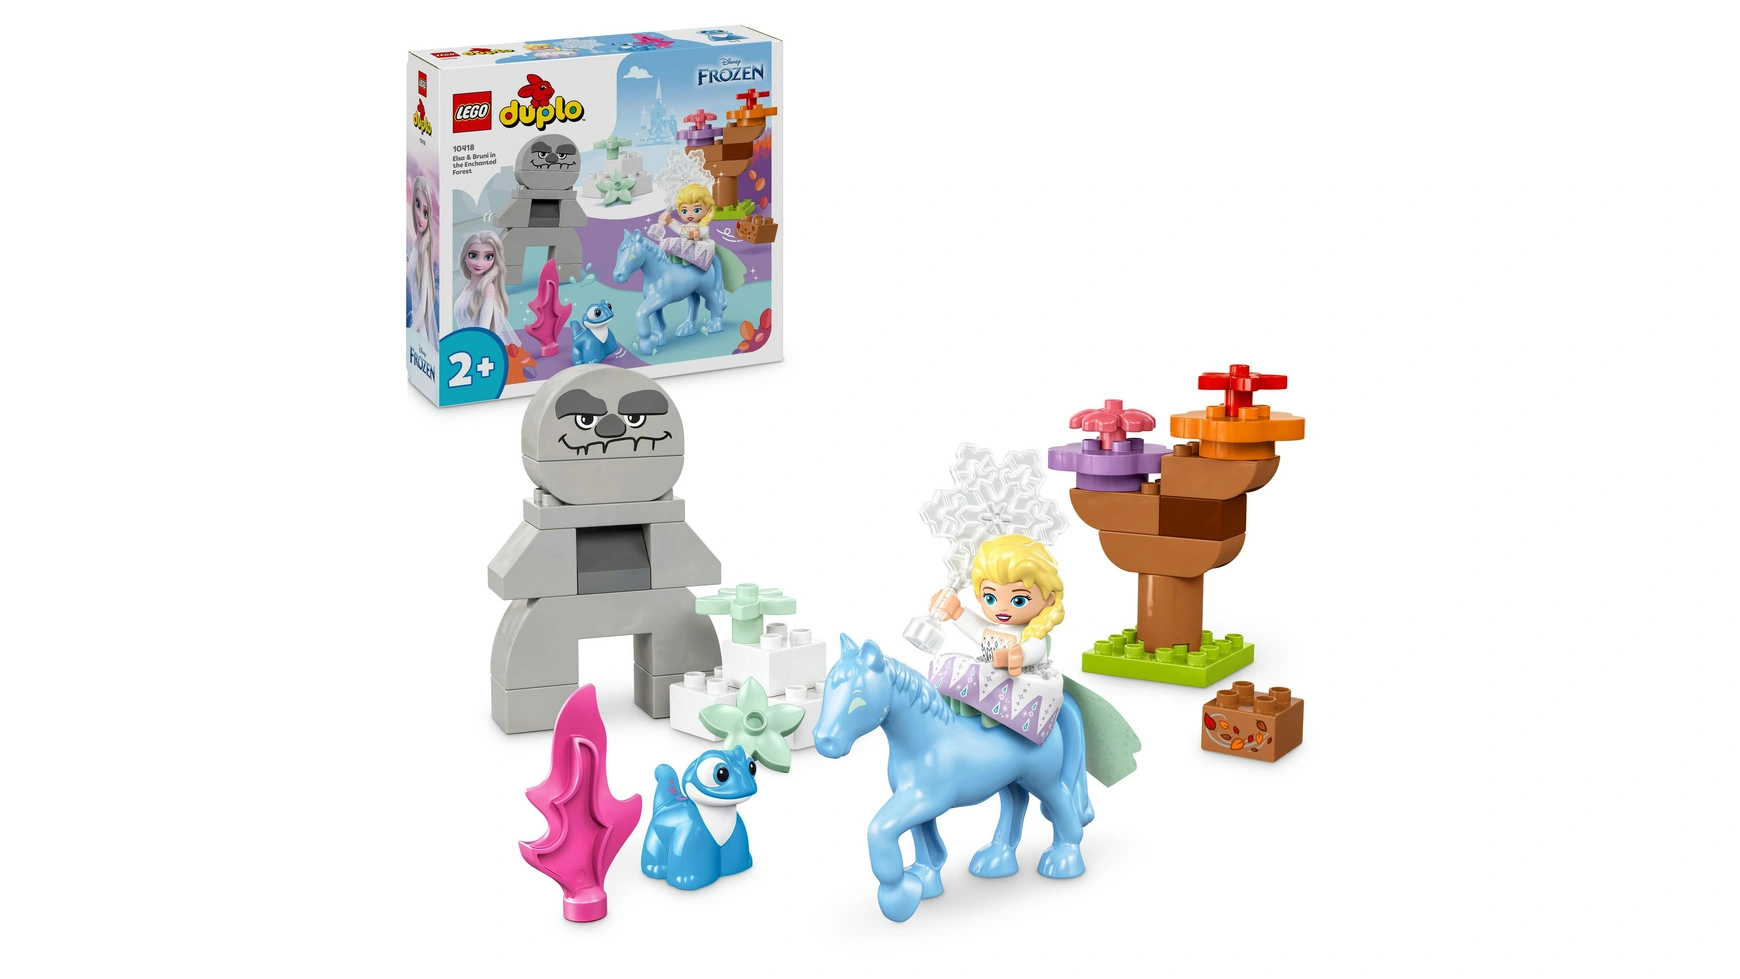 Lego DUPLO Дисней Эльза и Бруни в зачарованном лесу Frozen Toys